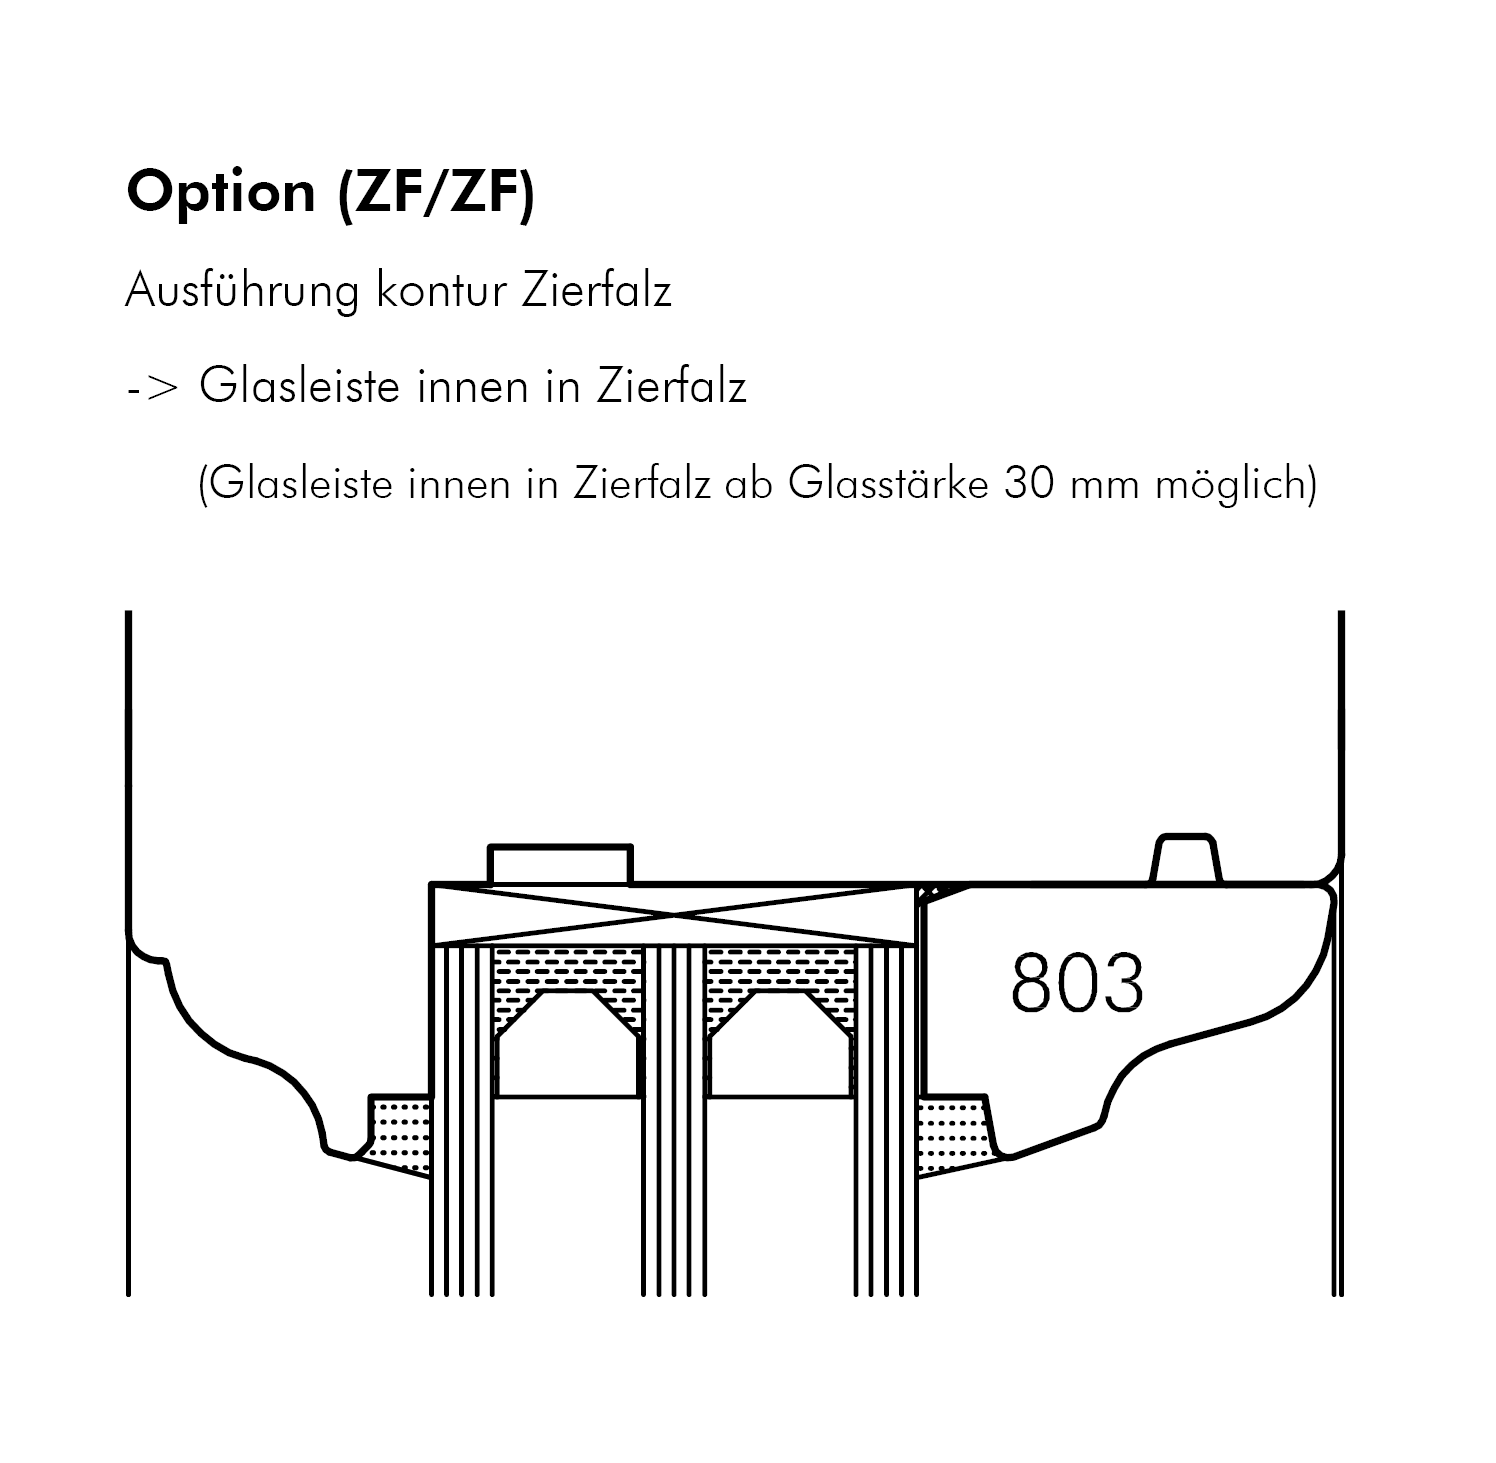 Option (ZF/ZF)